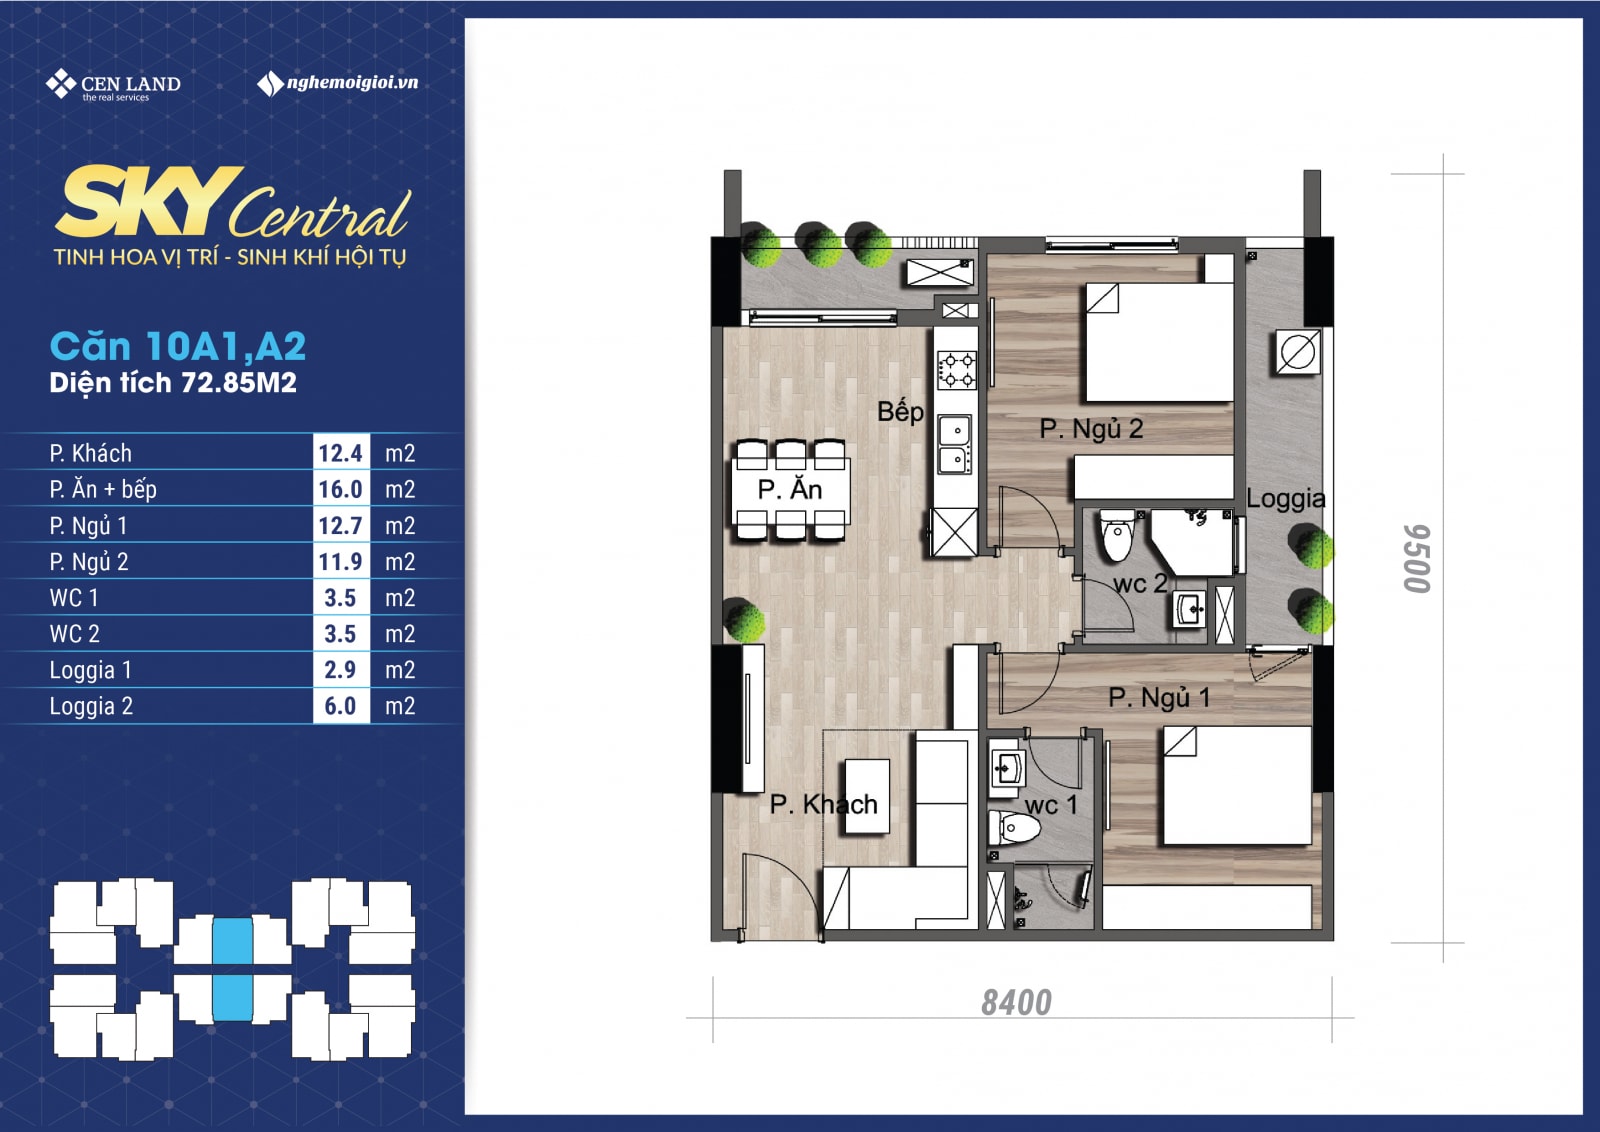 Thiết kế căn 10A1, 10A2 - 2 phòng ngủ chung cư Sky Central